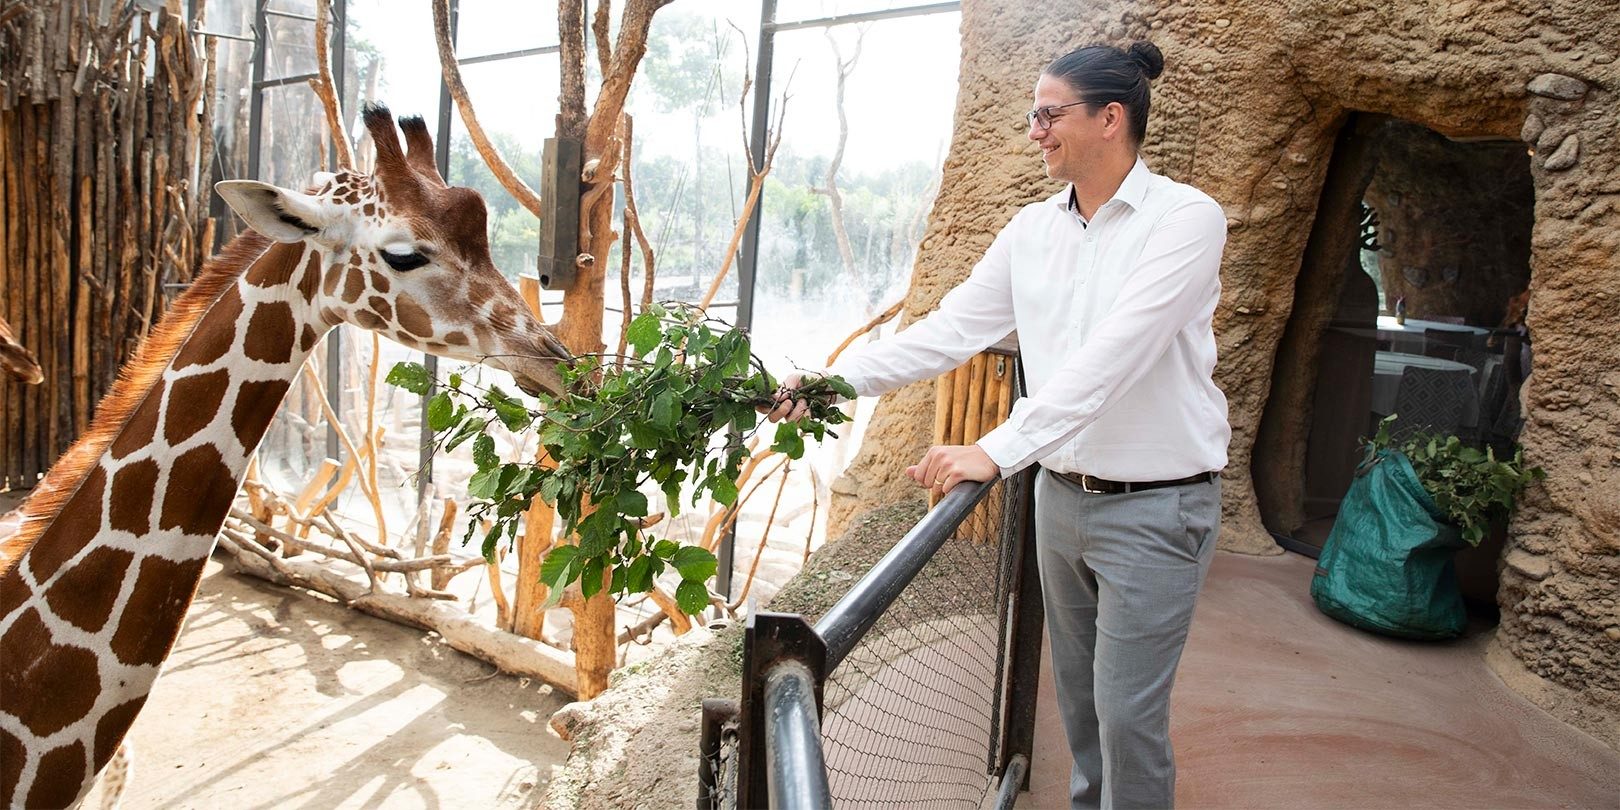 Mann mit Brille füttert eine Giraffe